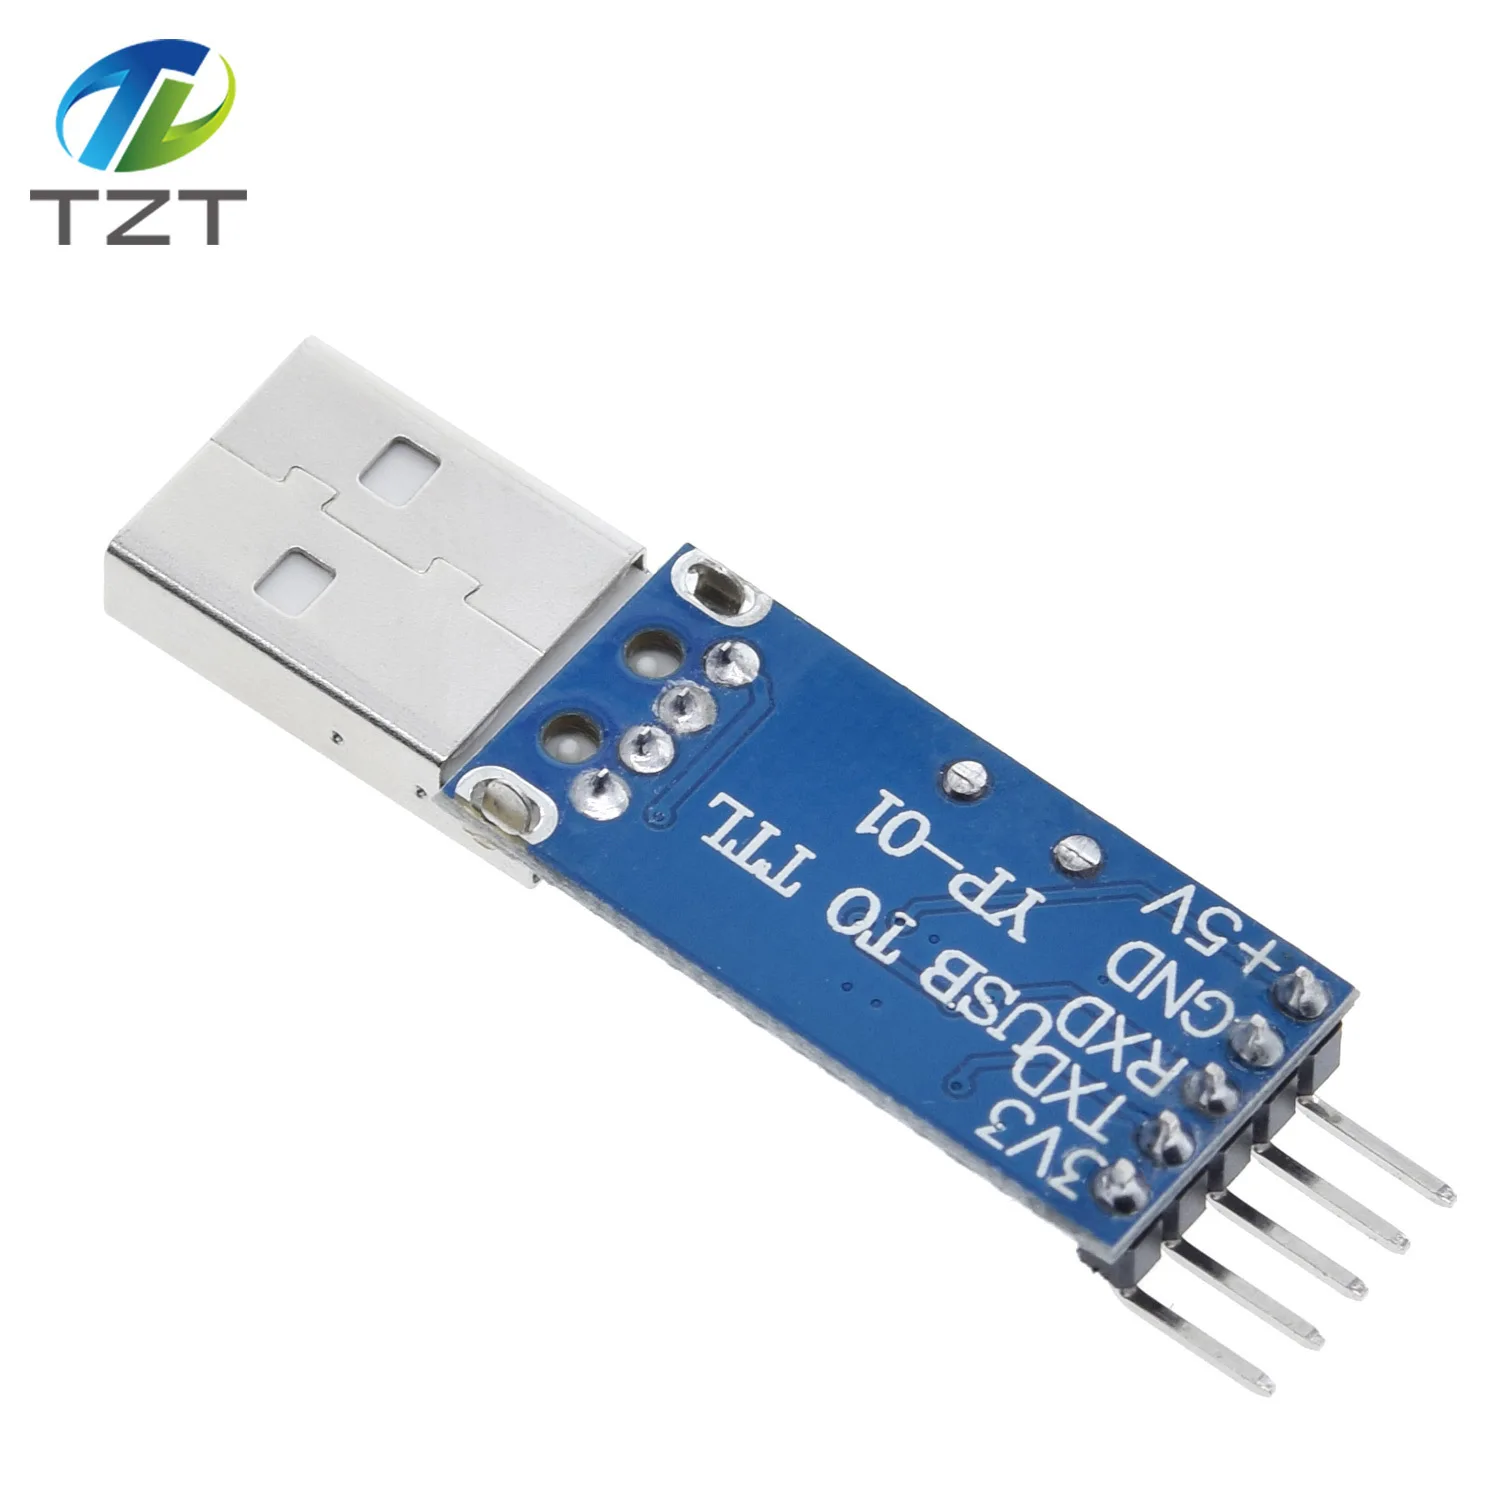 1 шт. PL2303 USB к ttl/USB-ttl/STC микроконтроллер программист/PL2303 USB к RS232 ttl конвертер адаптер модуль